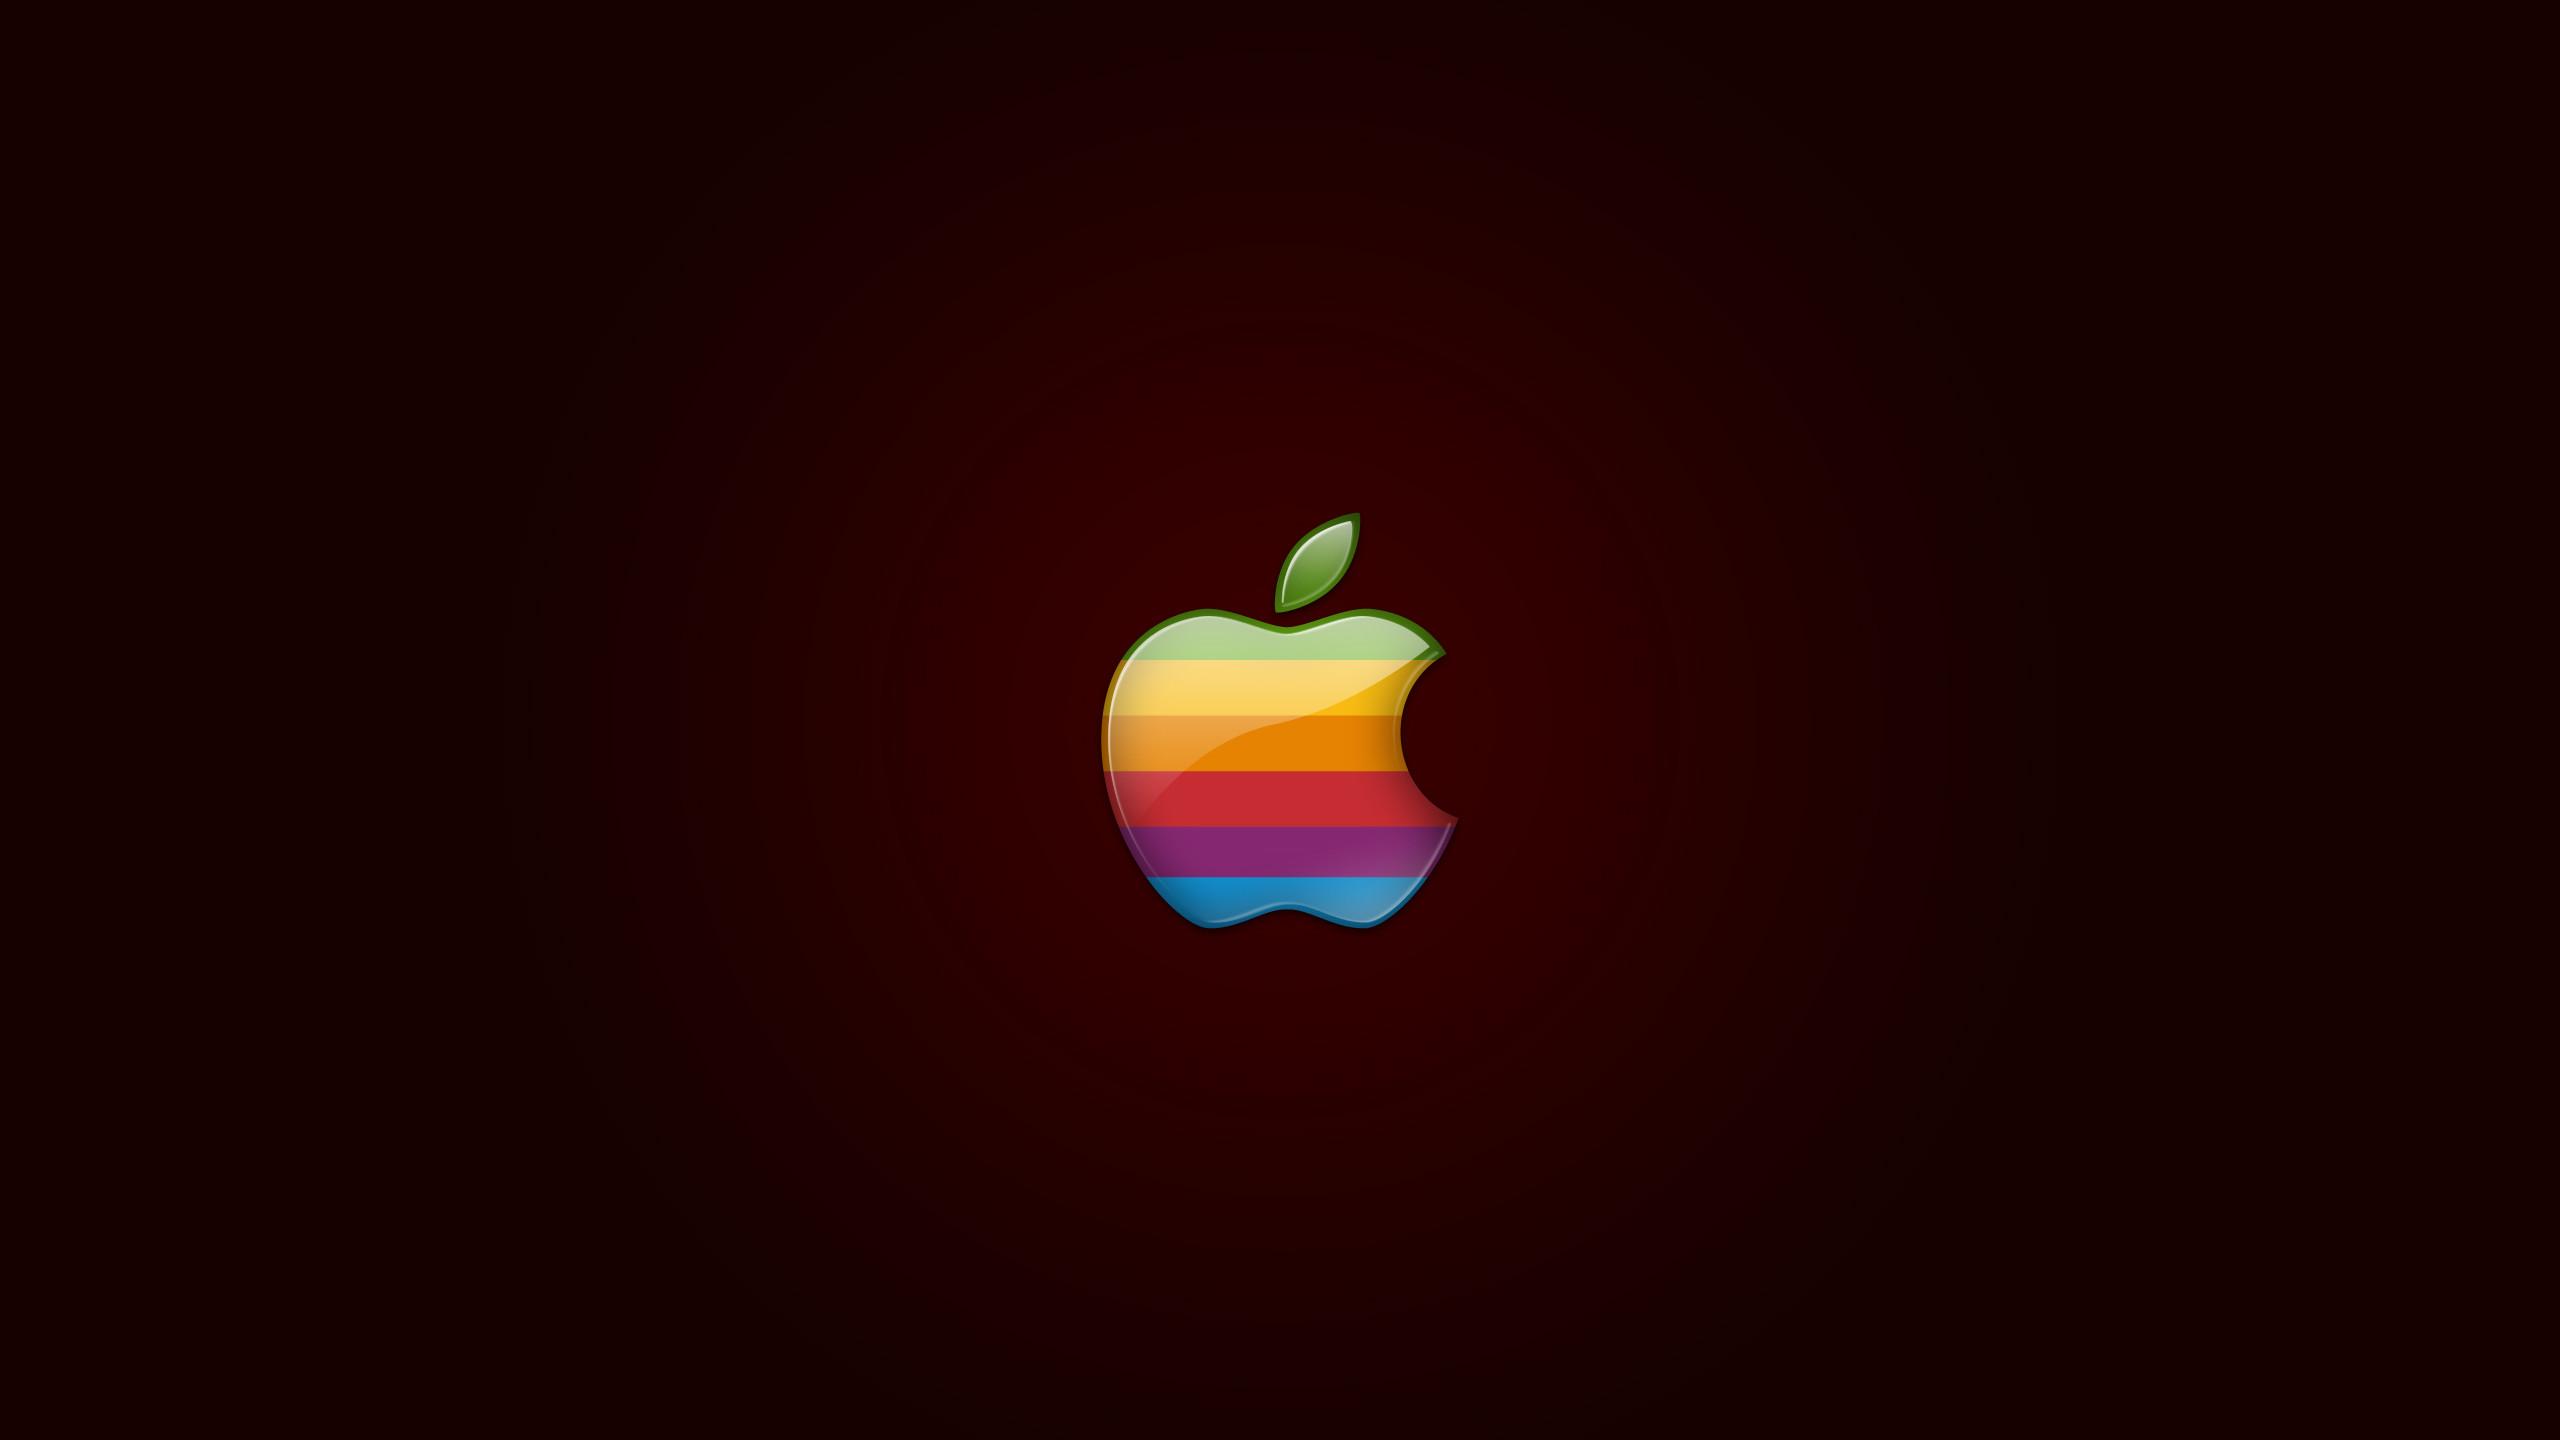 Retro Apple Logo 1440P Resolution HD 4k Wallpaper